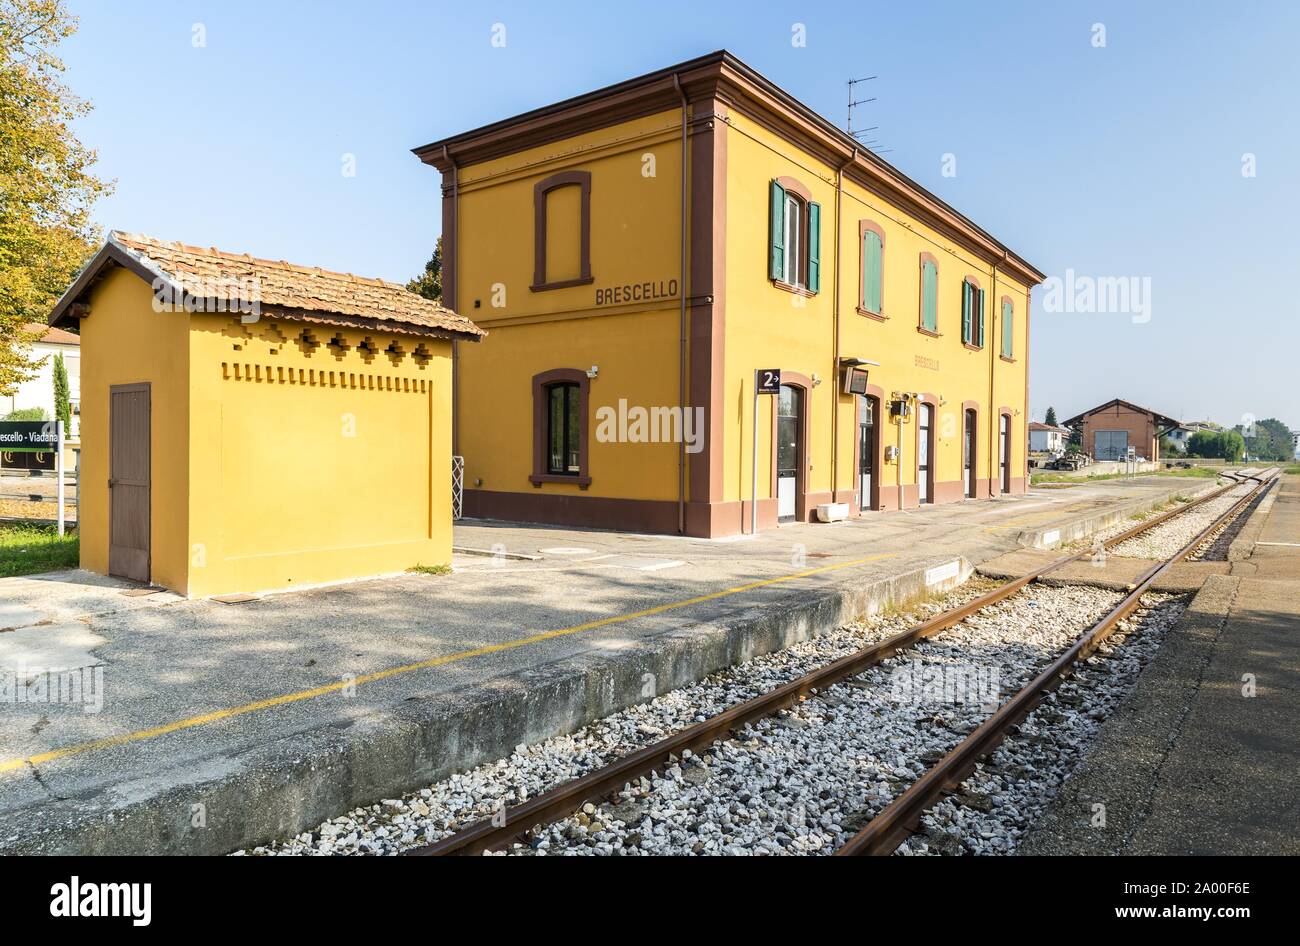 Station of Brescello, location of the films of Don Camillo and Peppone, Brescello, Province of Reggio Emilia, Emilia-Romagna, Italy Stock Photo